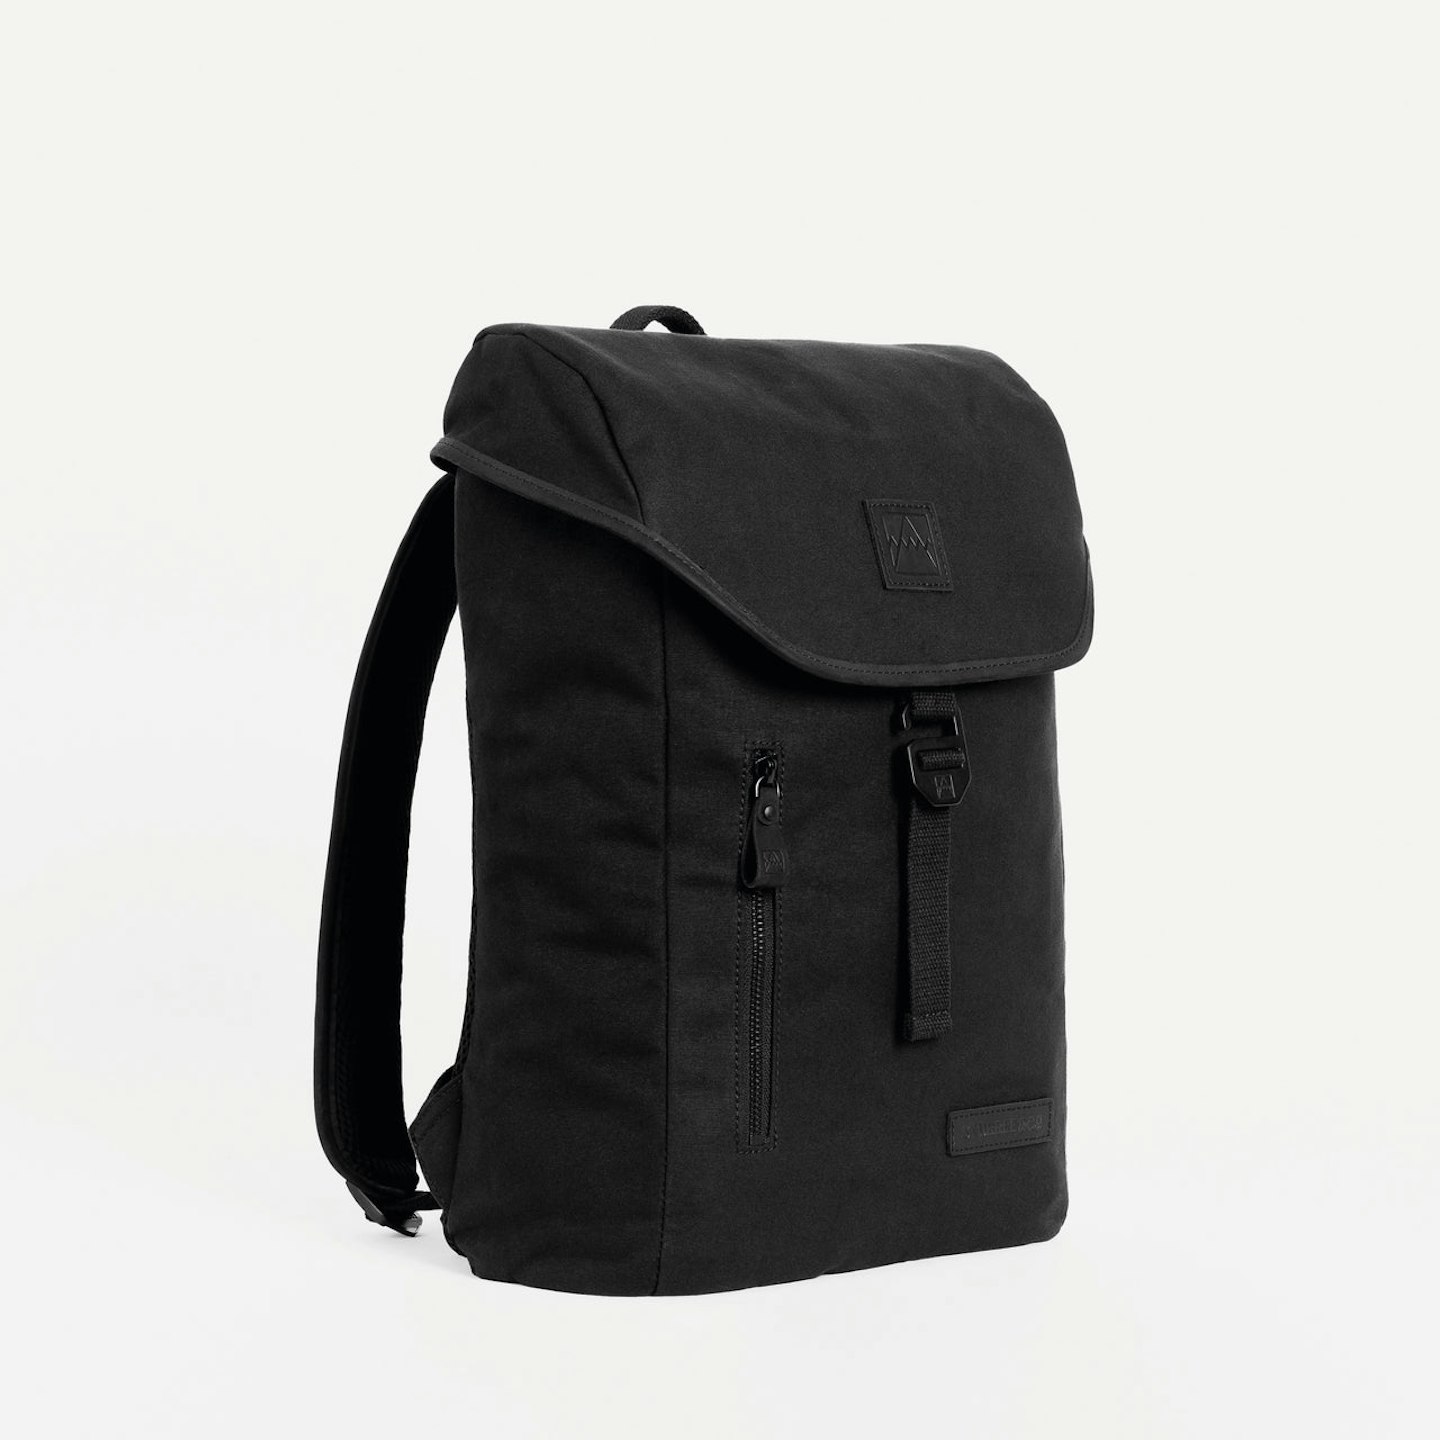 Stubble & Co, The Backpack Mini